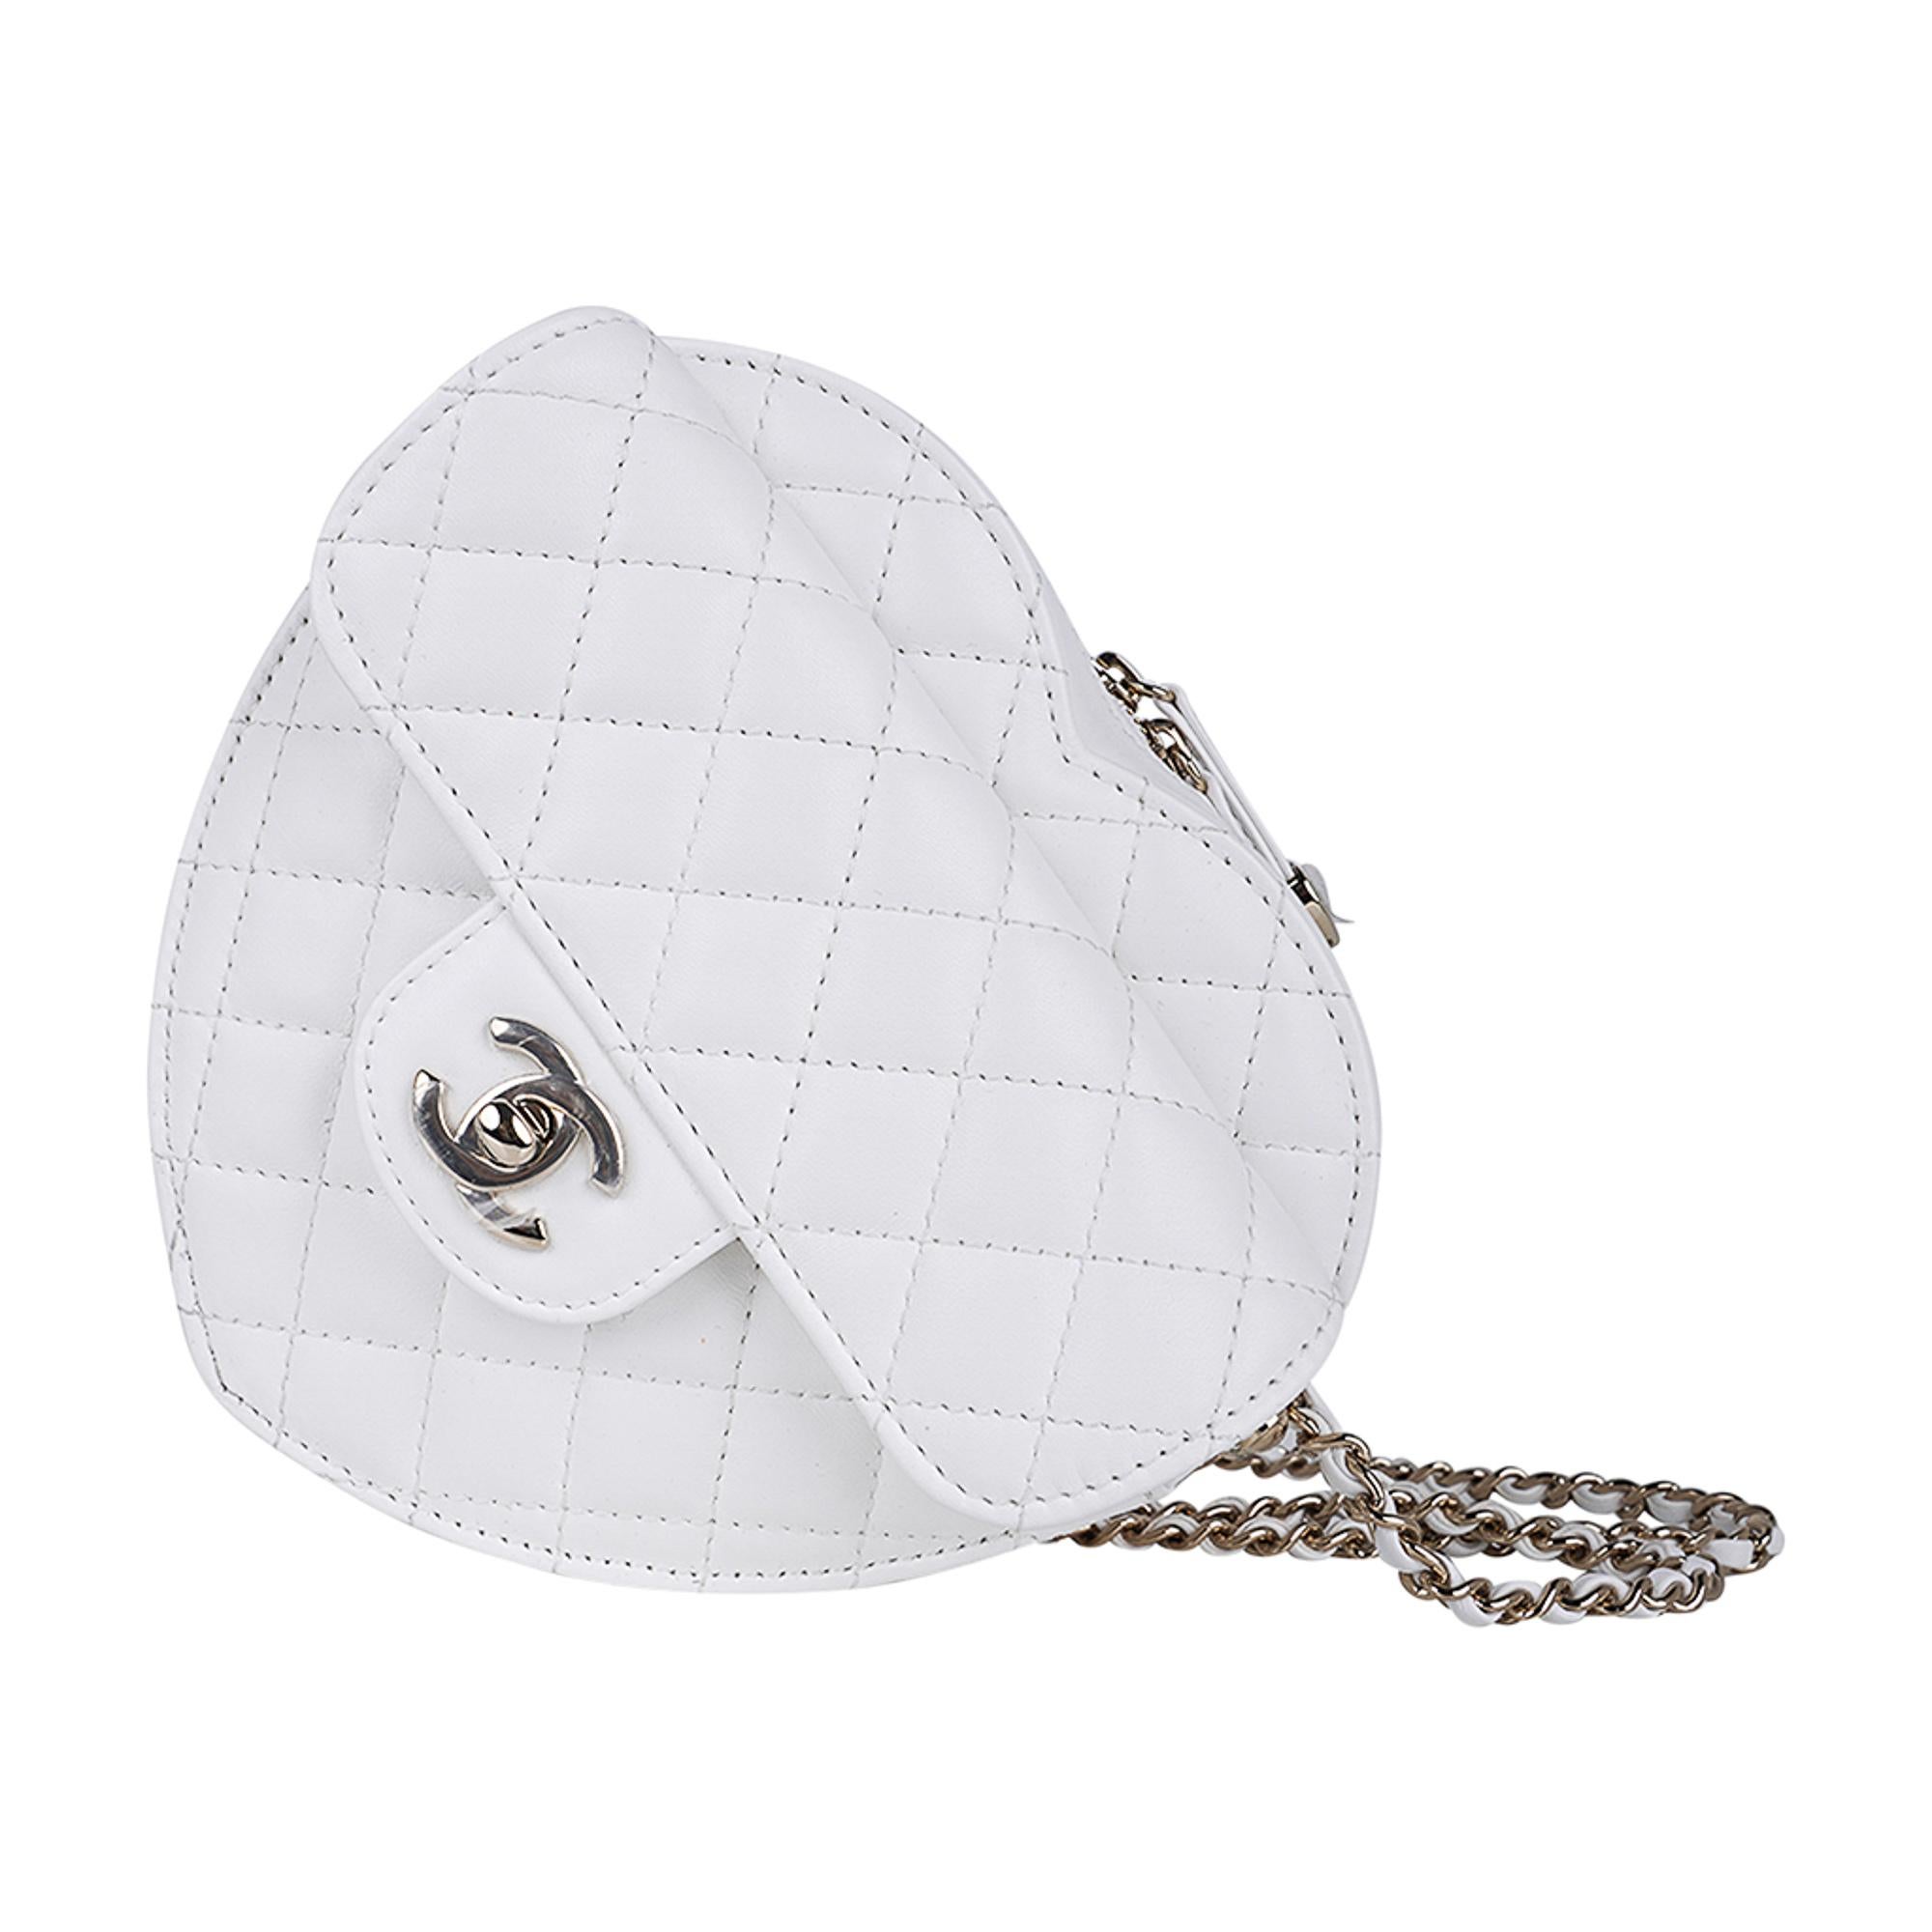 Mightychic bietet eine kokette und absolut fabelhafte Limited Edition Chanel Heart Bag 2022 SS aus weißem, gestepptem Lammfell an.
Champagnerfarbene Hardware.
Ein MUSS für jeden Chanel-Sammler.
NEU oder NIE GEBRAUCHT.
Wird mit Box geliefert.